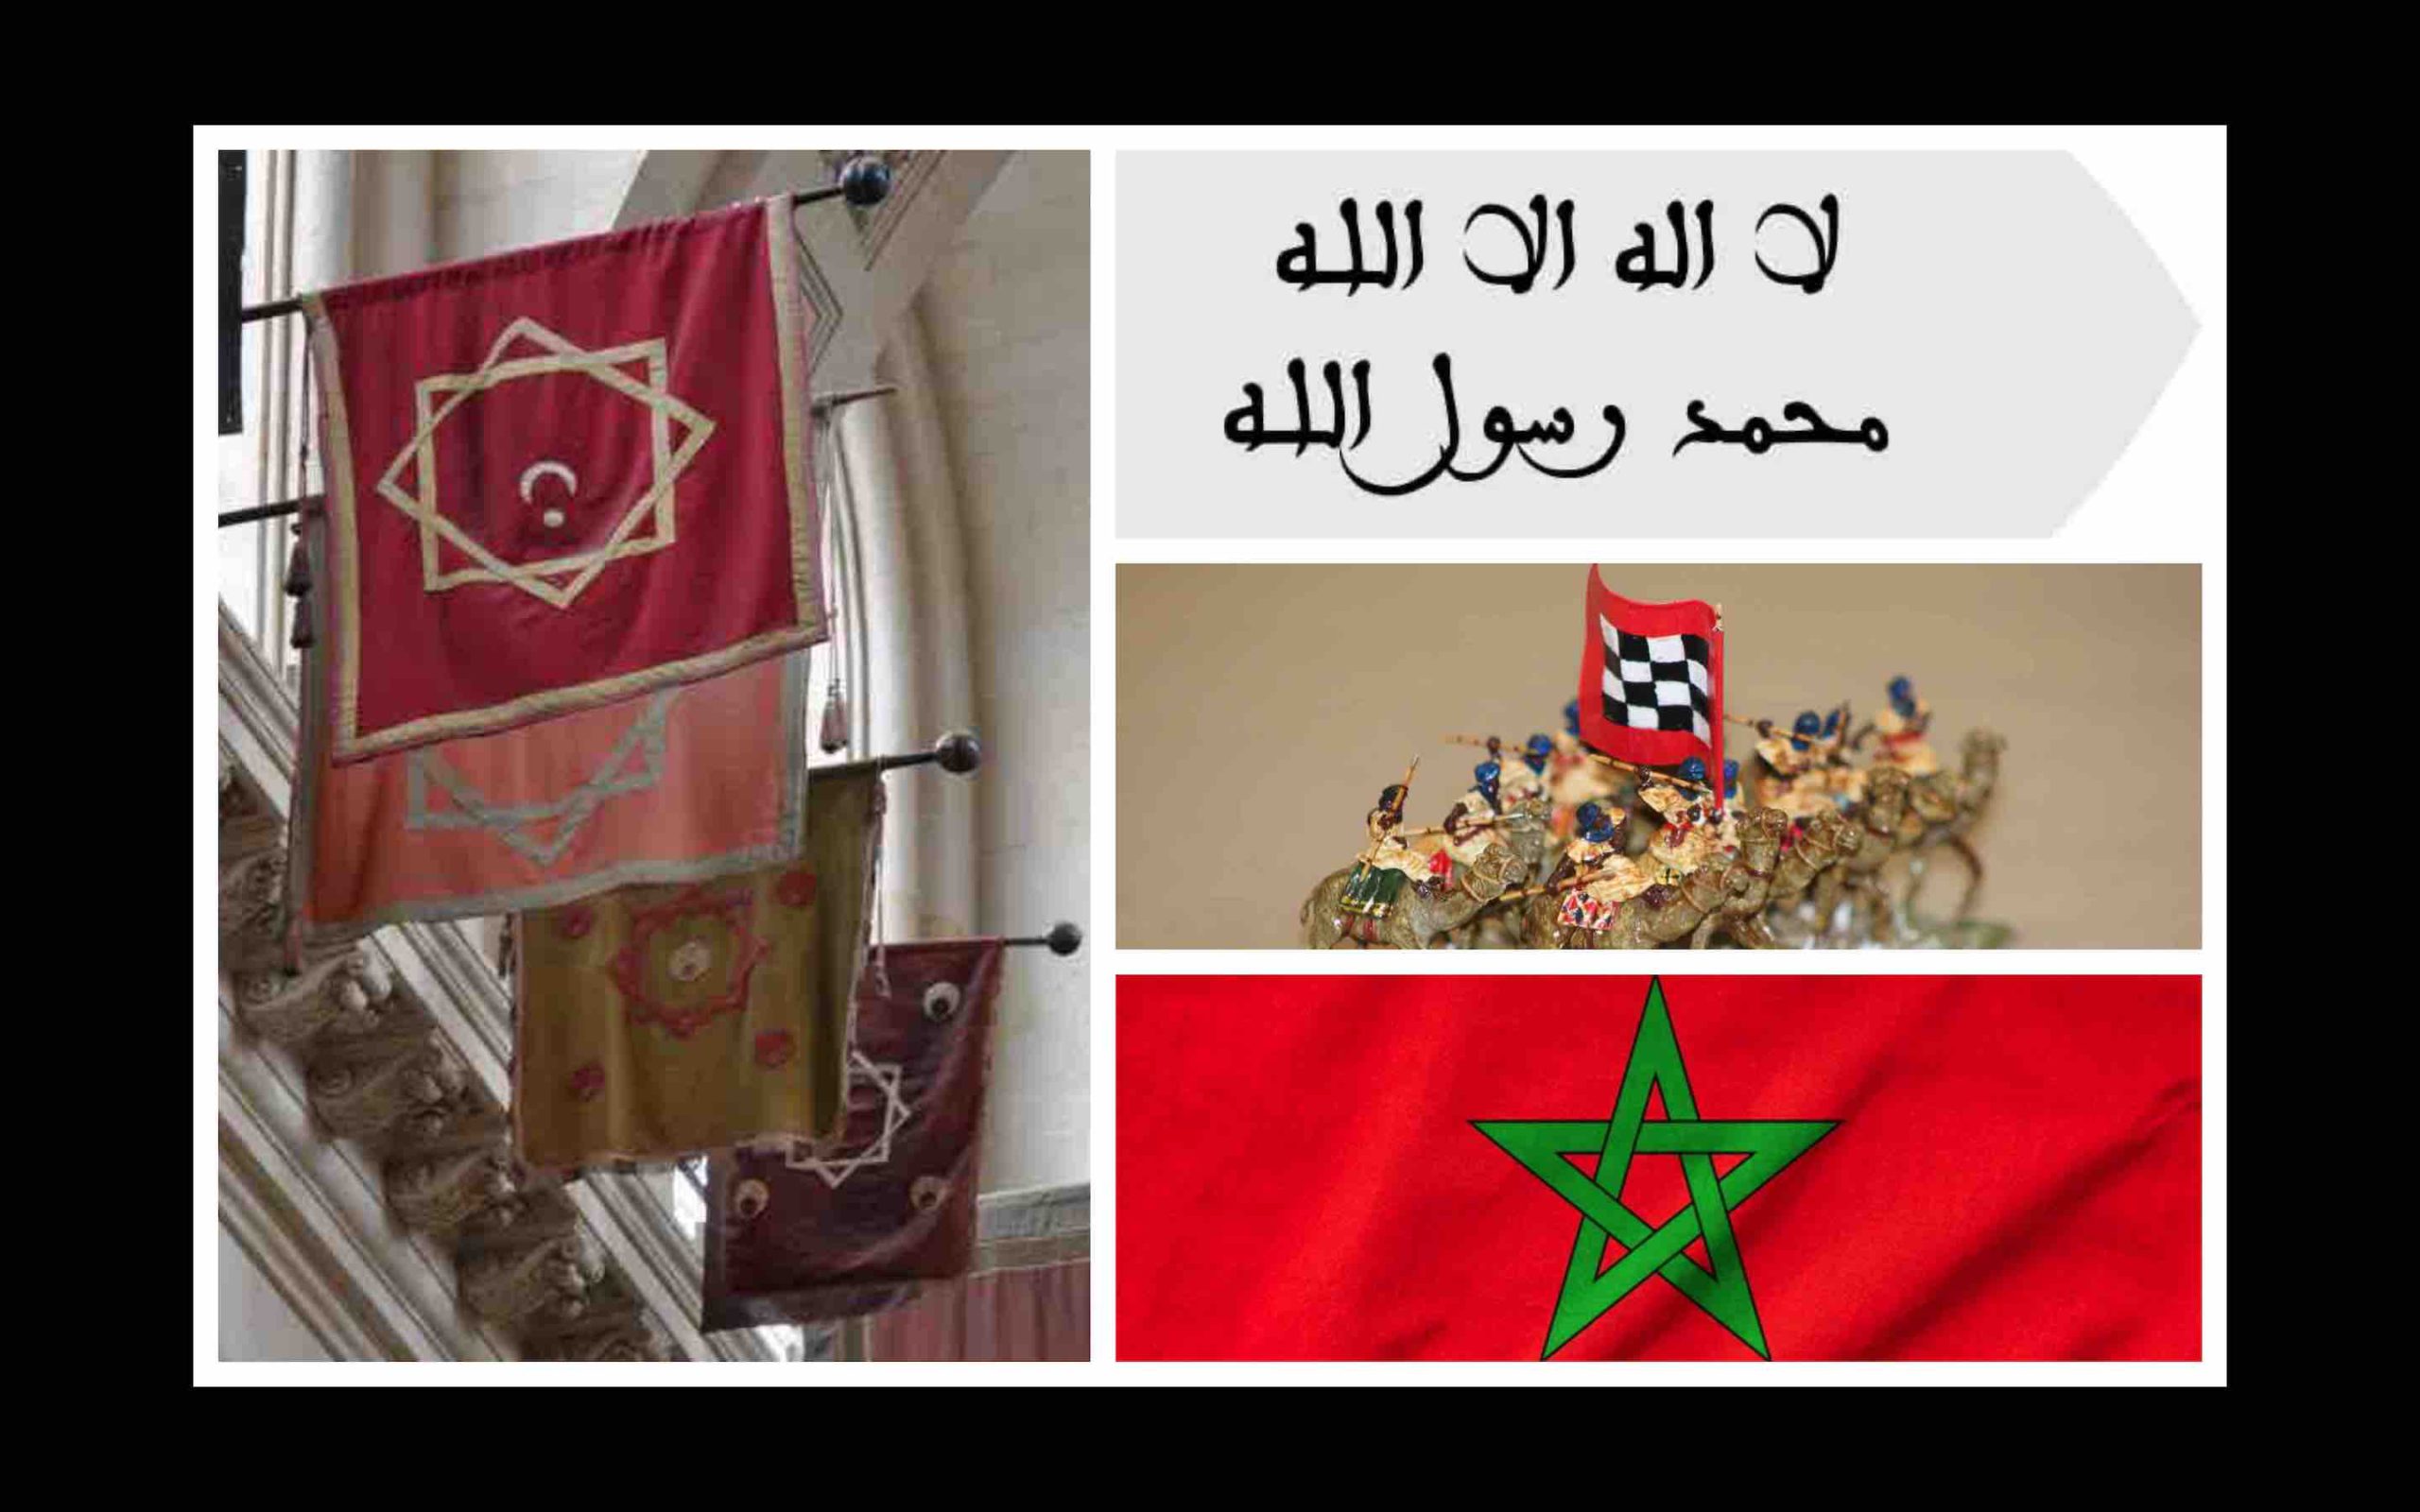 Drapeau du Maroc : son histoire, sa signification